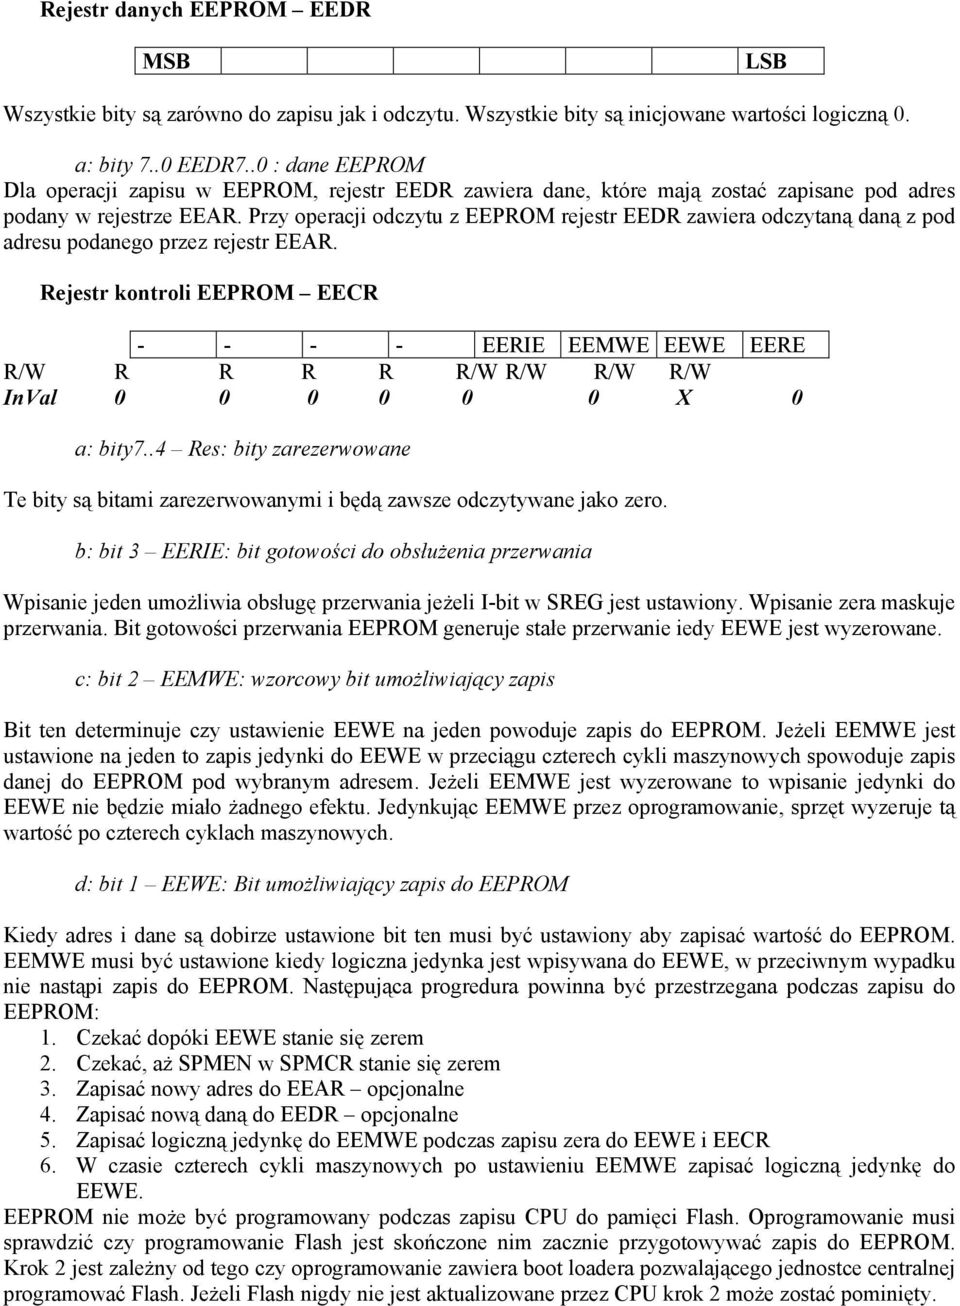 Przy operacji odczytu z EEPROM rejestr EEDR zawiera odczytaną daną z pod adresu podanego przez rejestr EEAR.